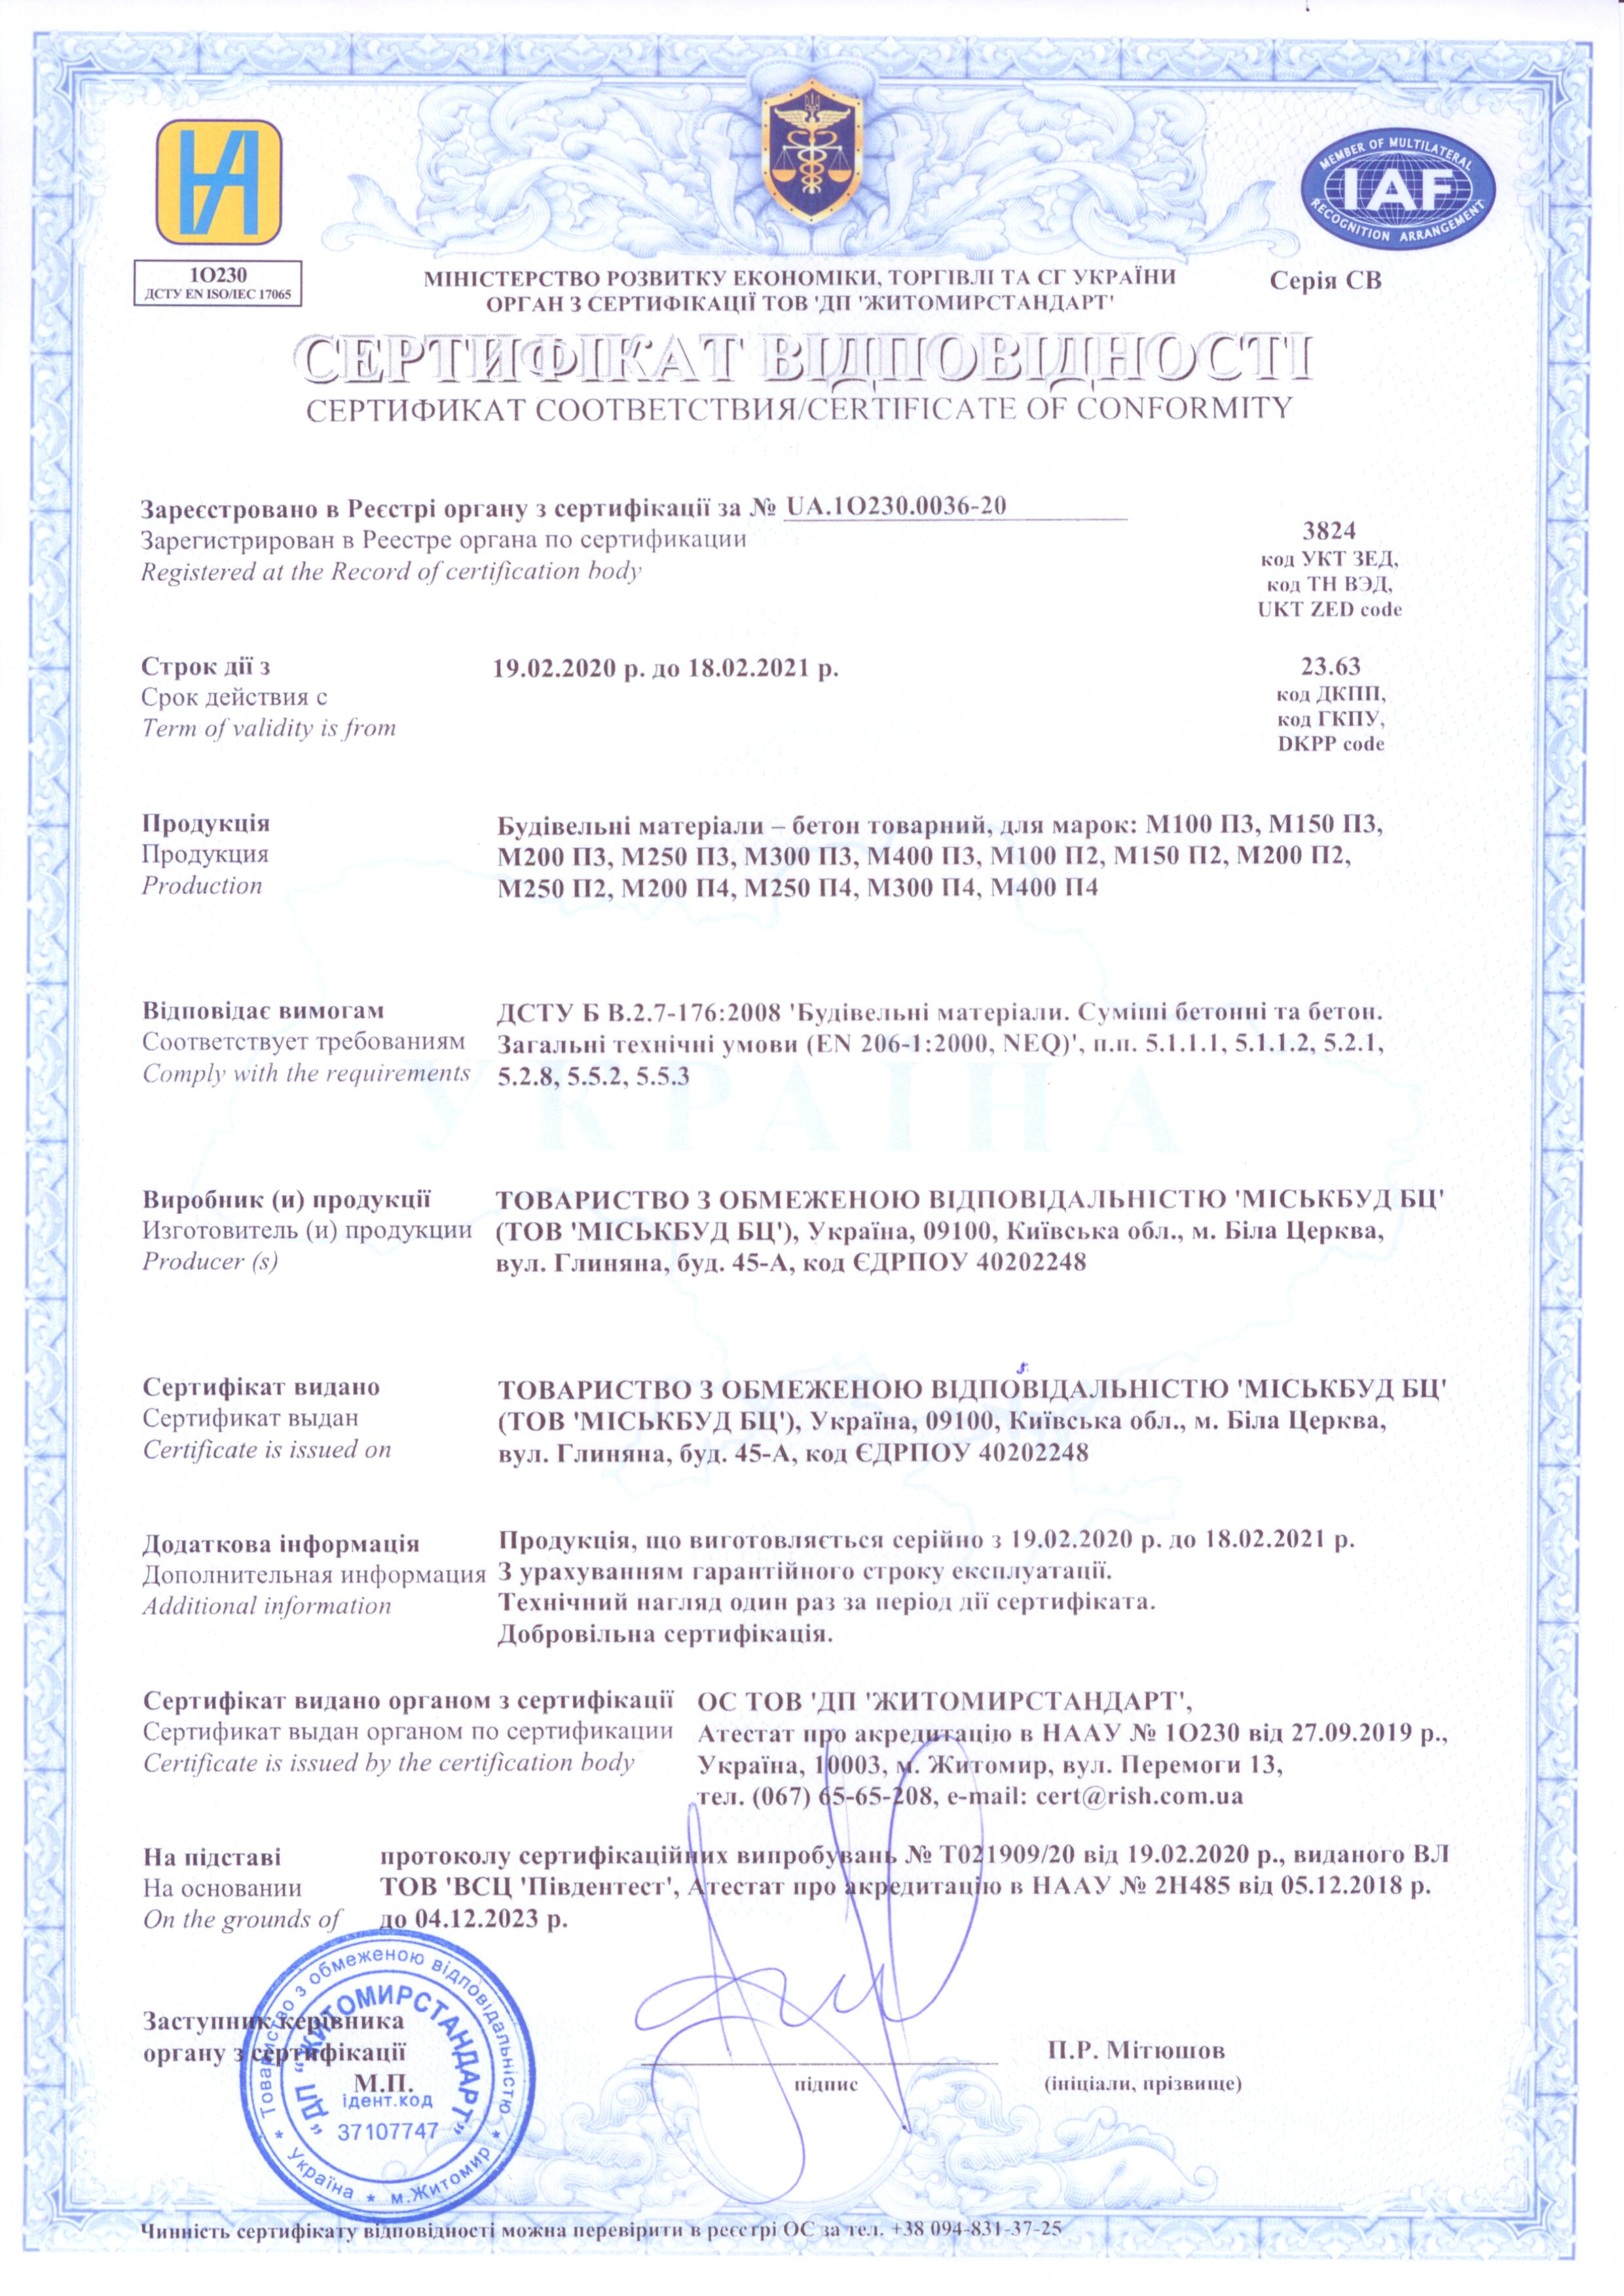 Скан сертифікату відповідності якості бетону